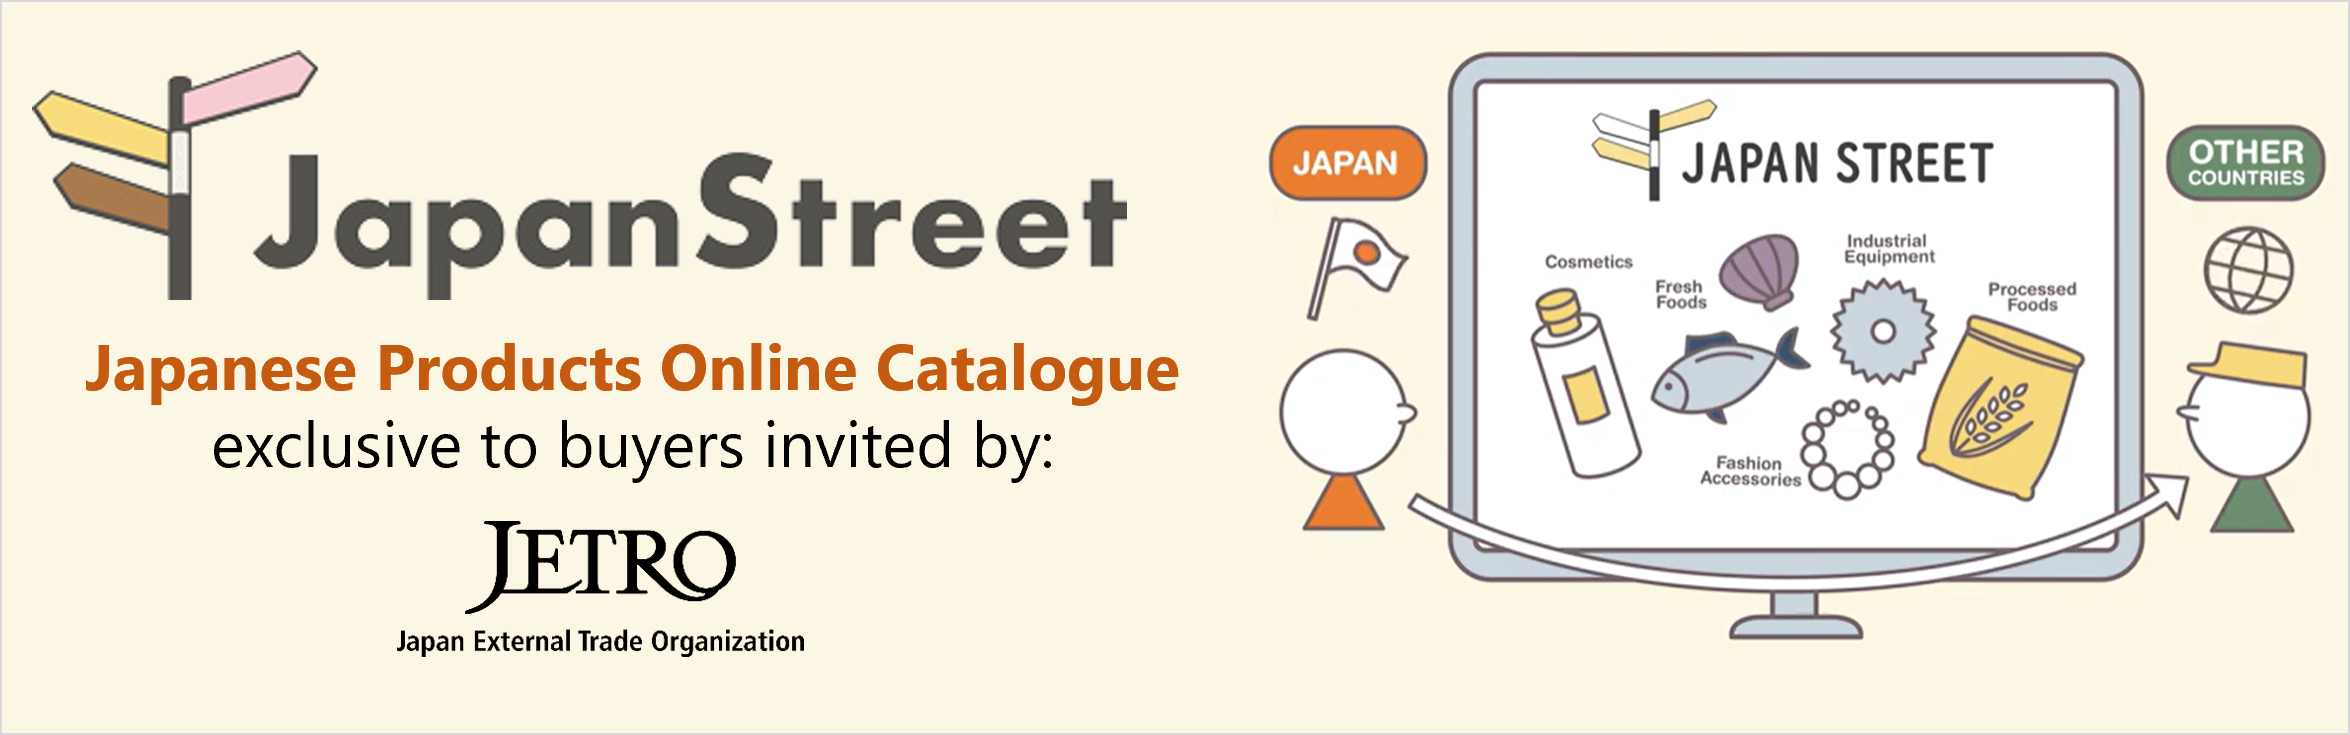 japan_street